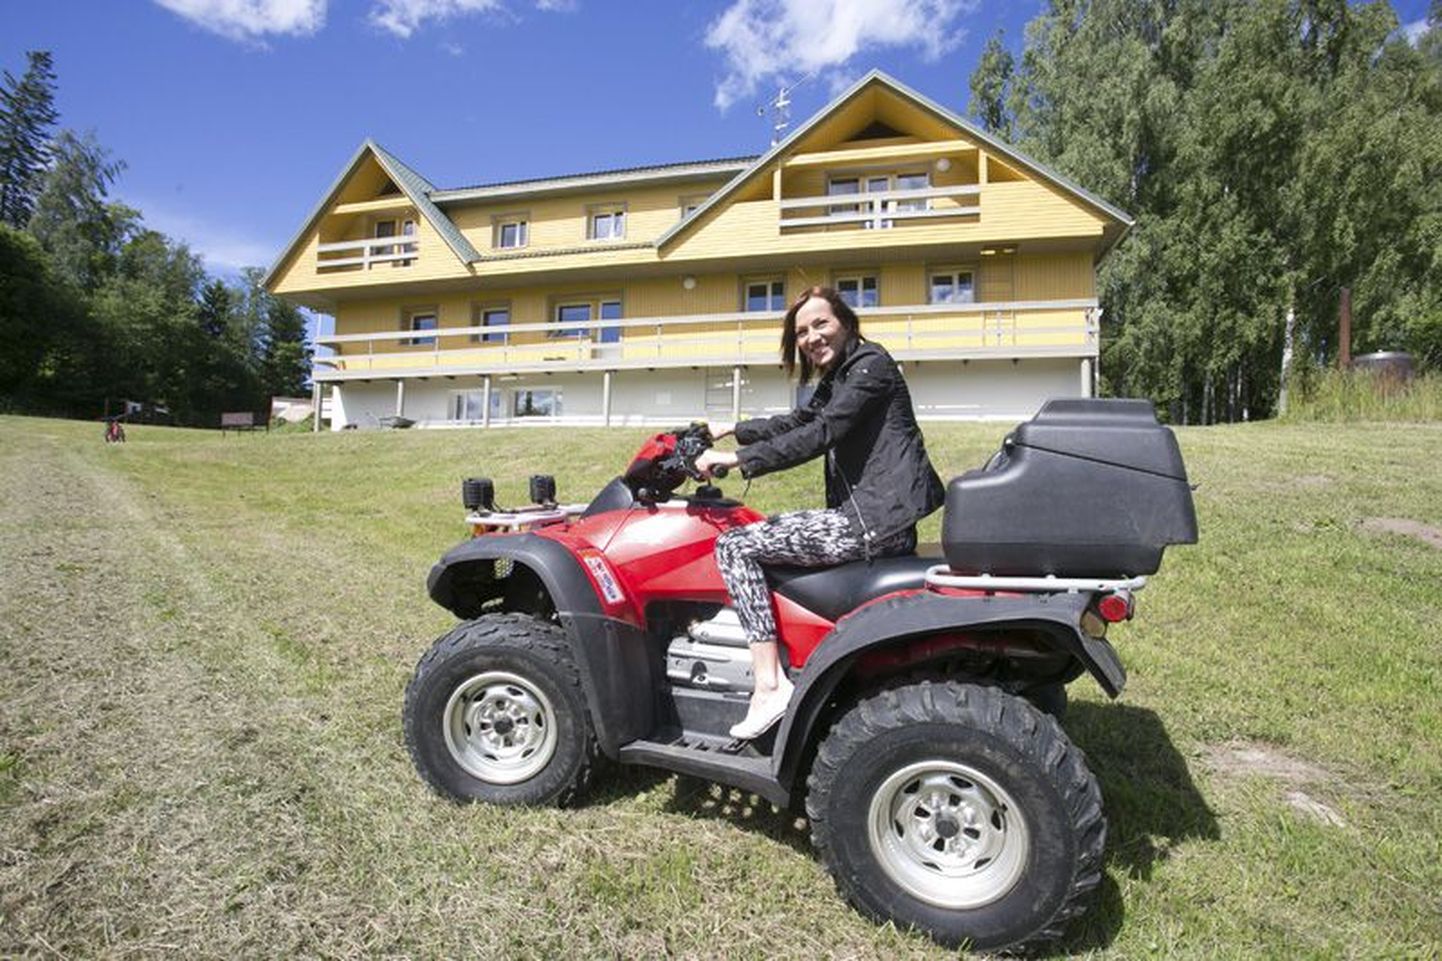 Mõedaku spodibaasi uus juhataja Kristiina Tänavots tegeleb ekstreemspordiga ja on ATV-matkadel instruktor.